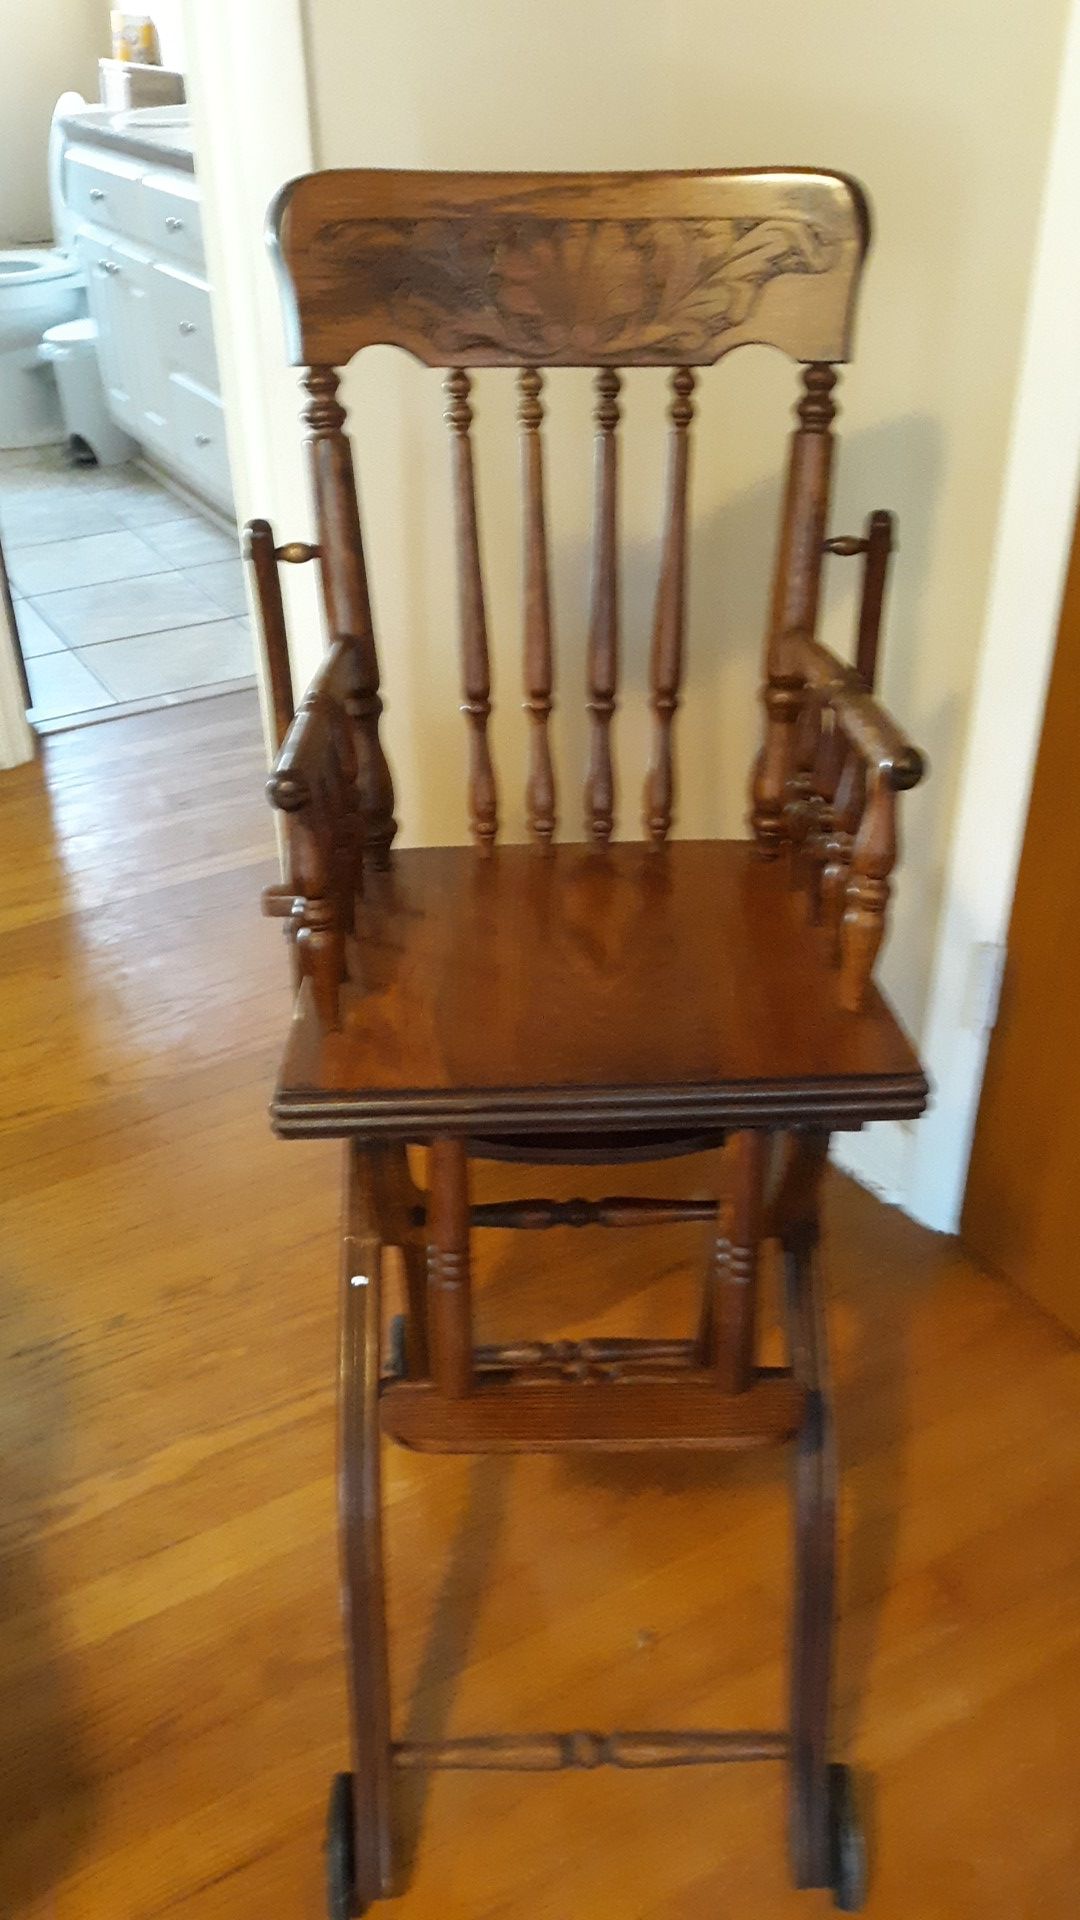 A wooden antique high chair